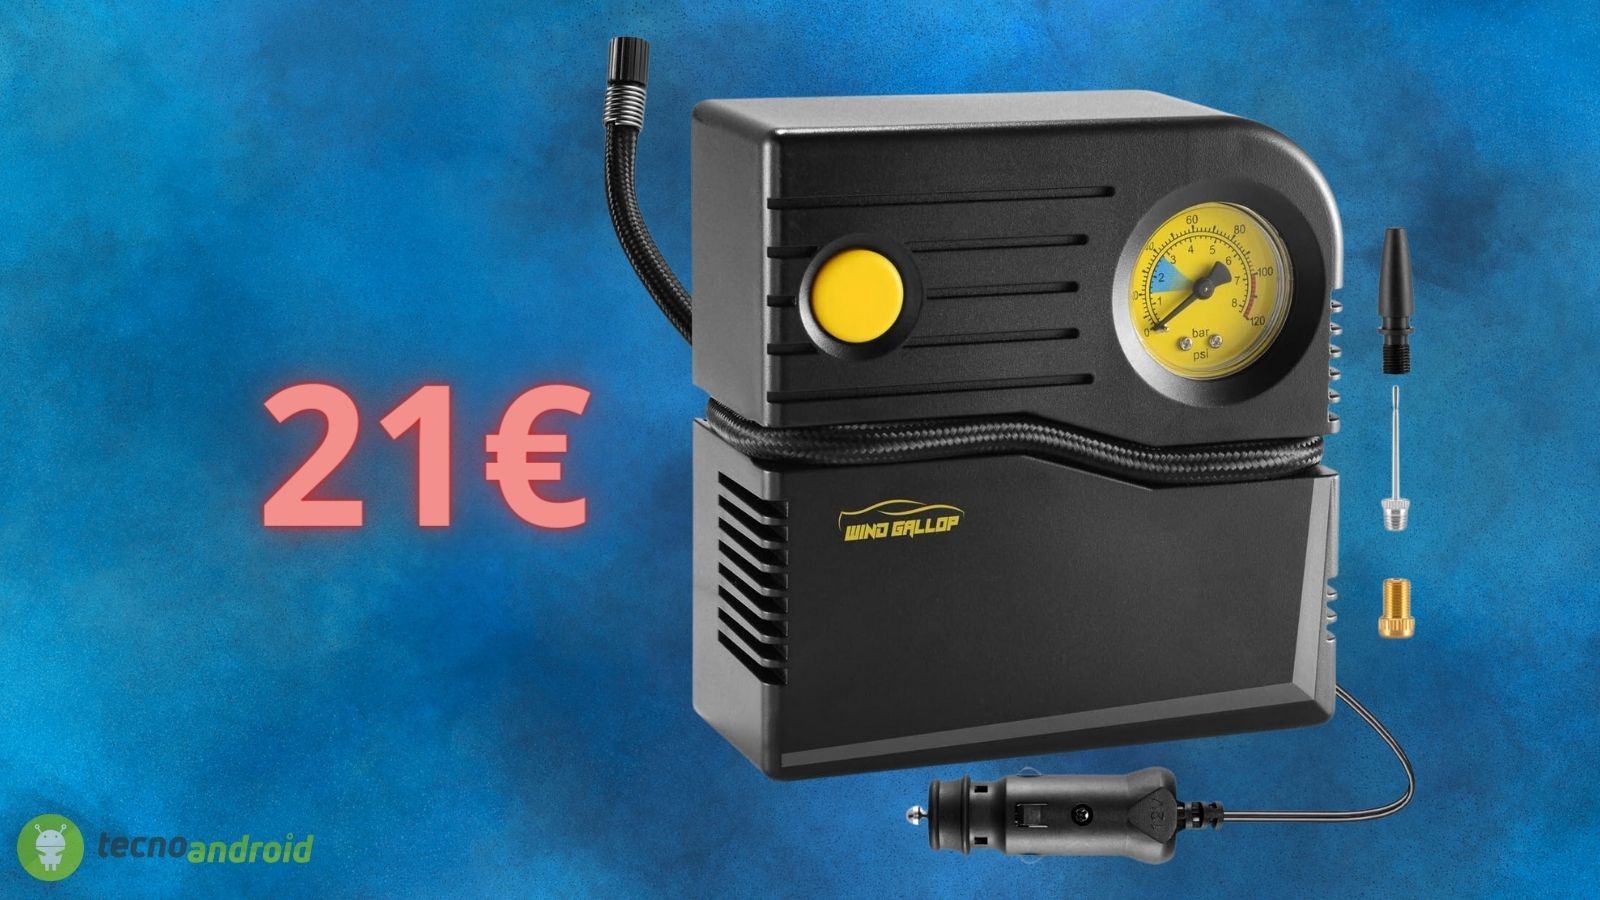 Compressore portatile AUTO a 21€: prezzo RIDICOLO su Amazon